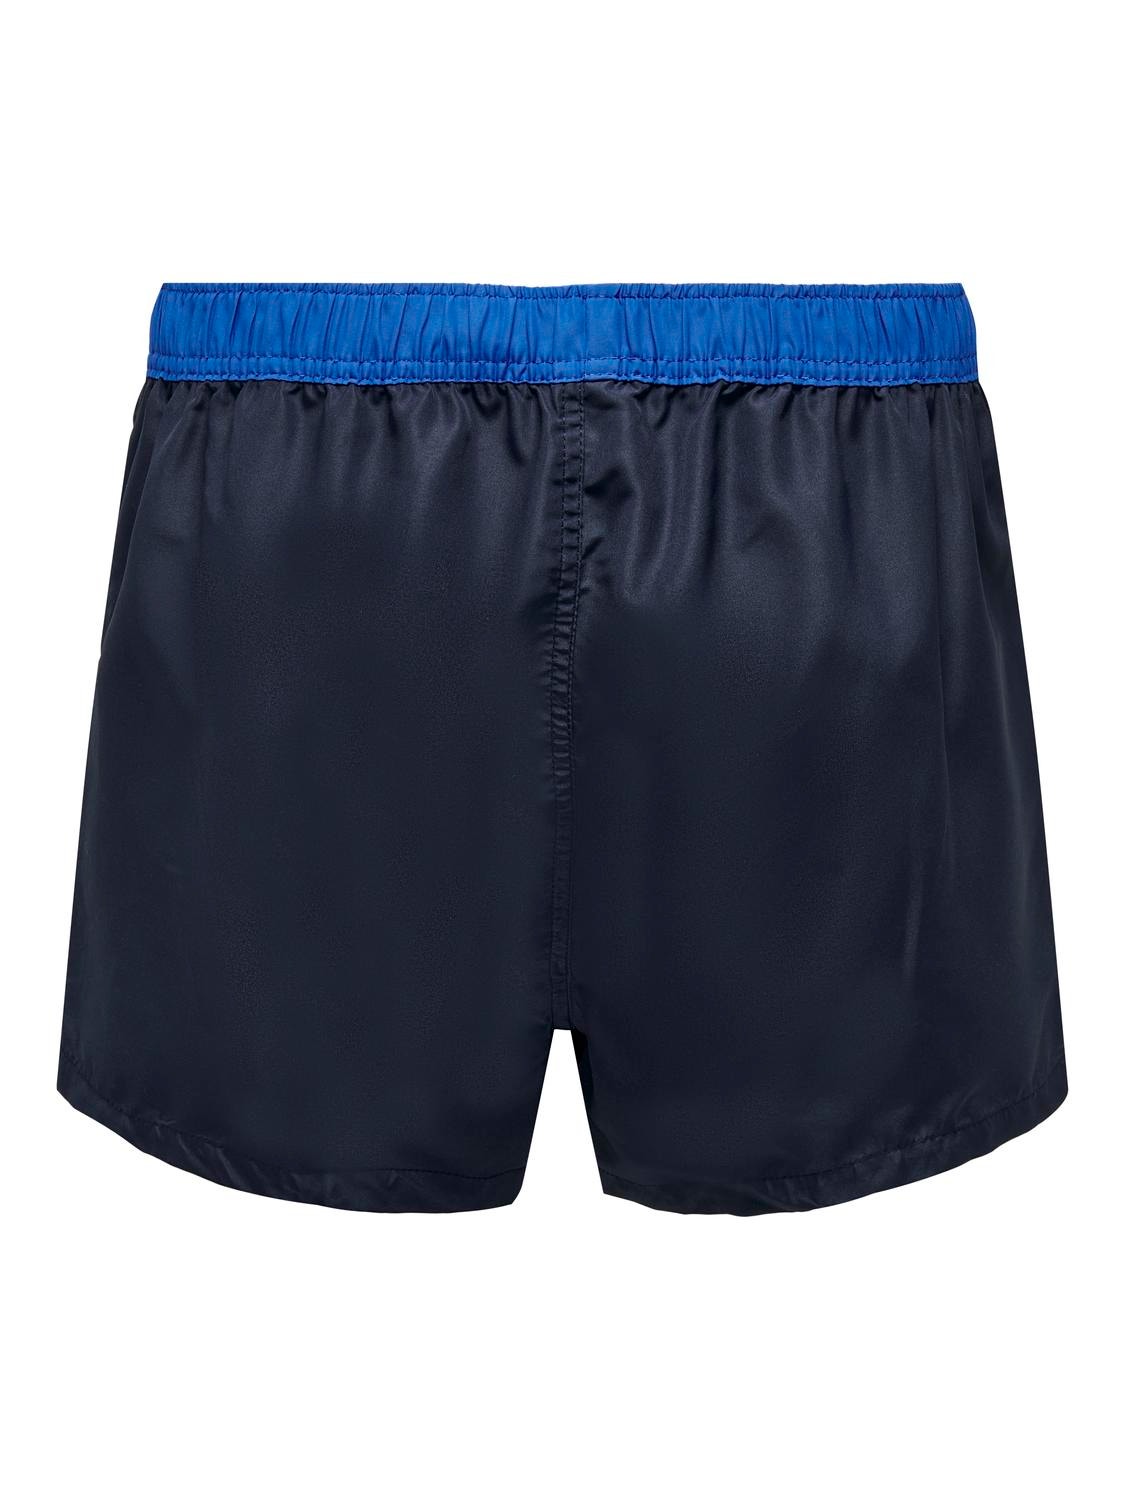 ONLY & SONS Swim Shorts -Dark Navy - 22025372